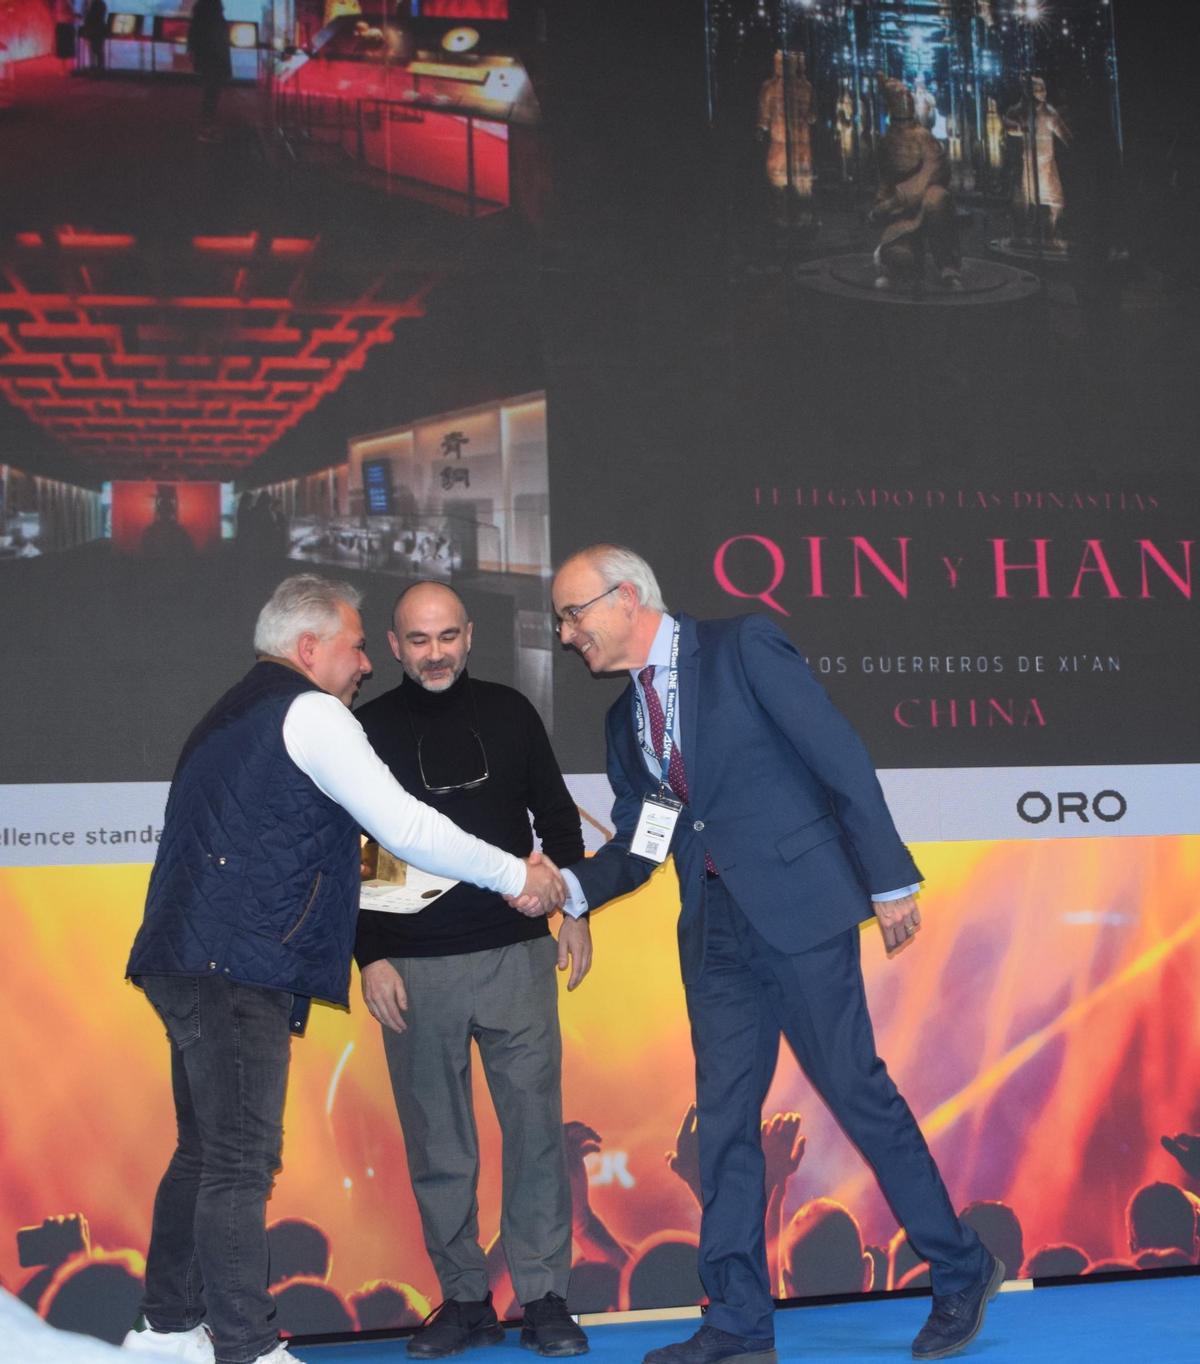 Momento de entrega del premio, con Ángel Rocamora y José Alberto Cortés